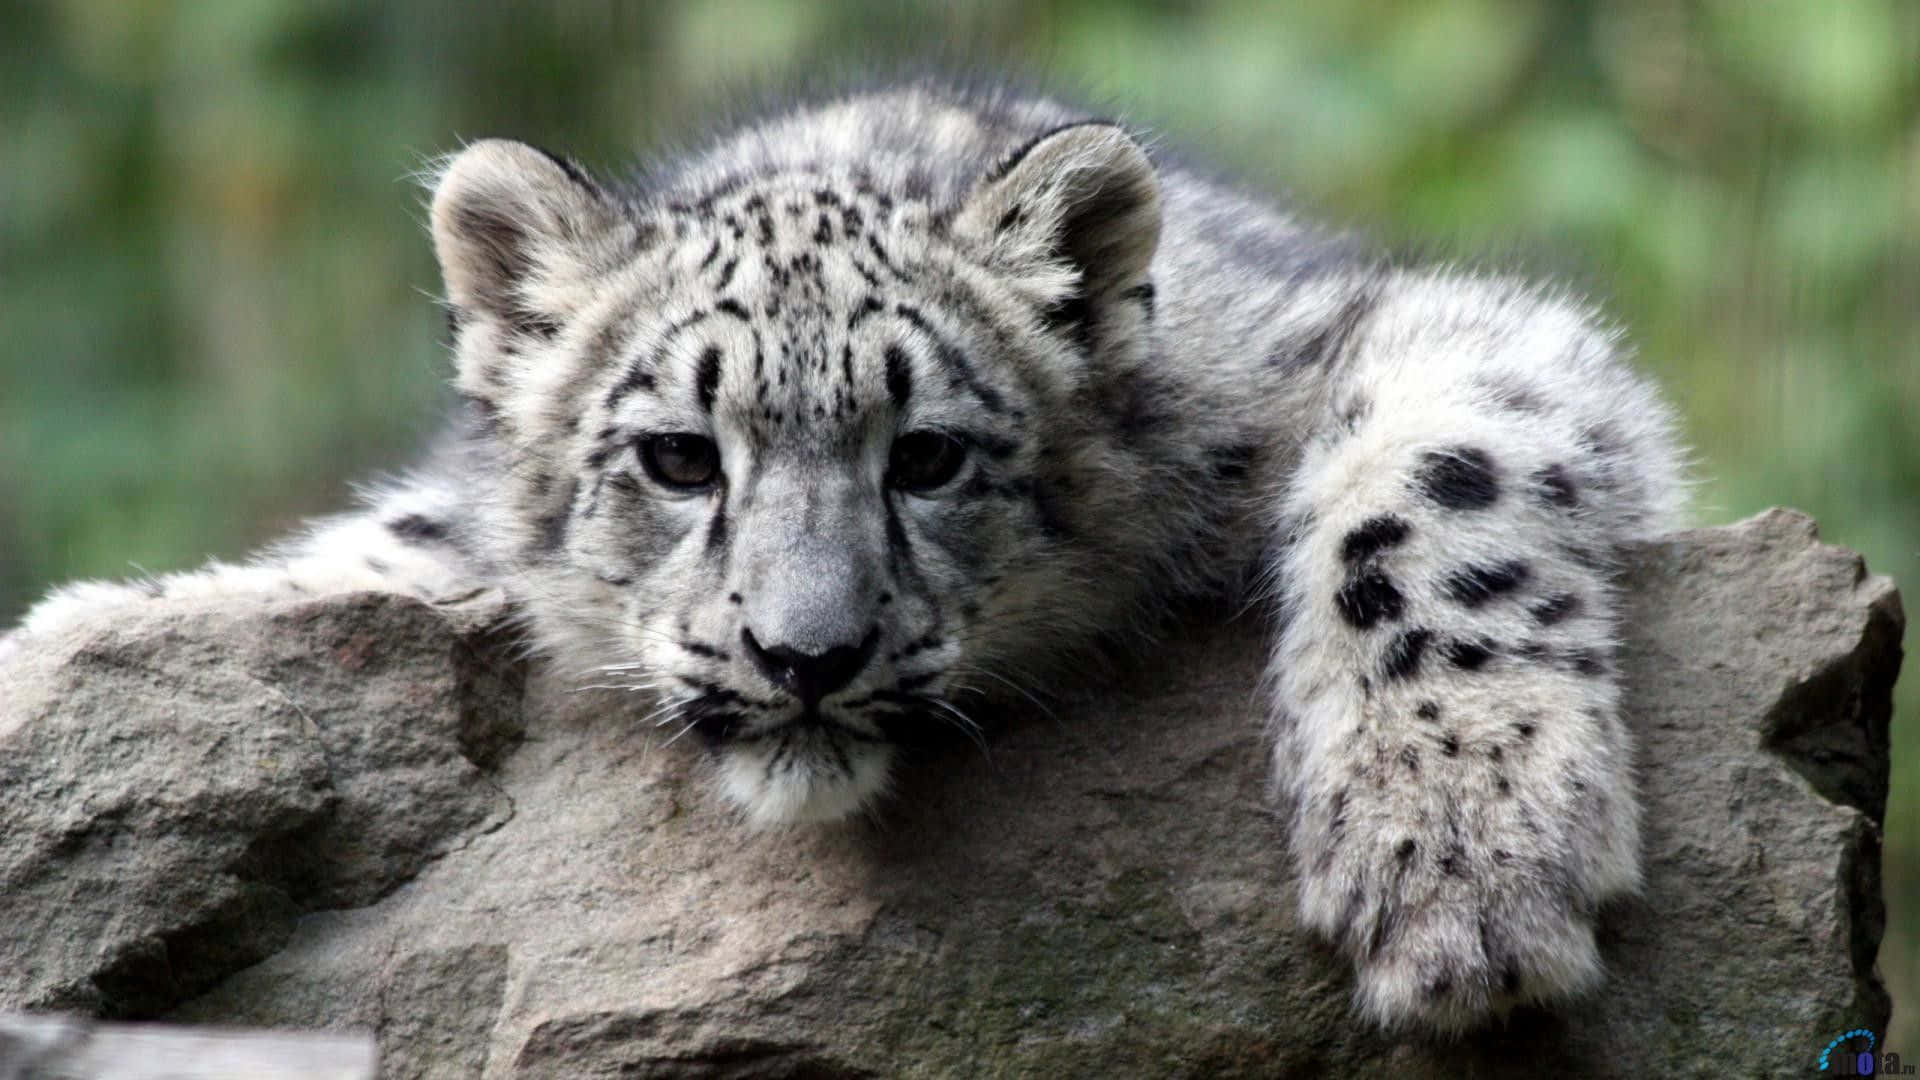 Beauty of a Snow Leopard Wallpaper